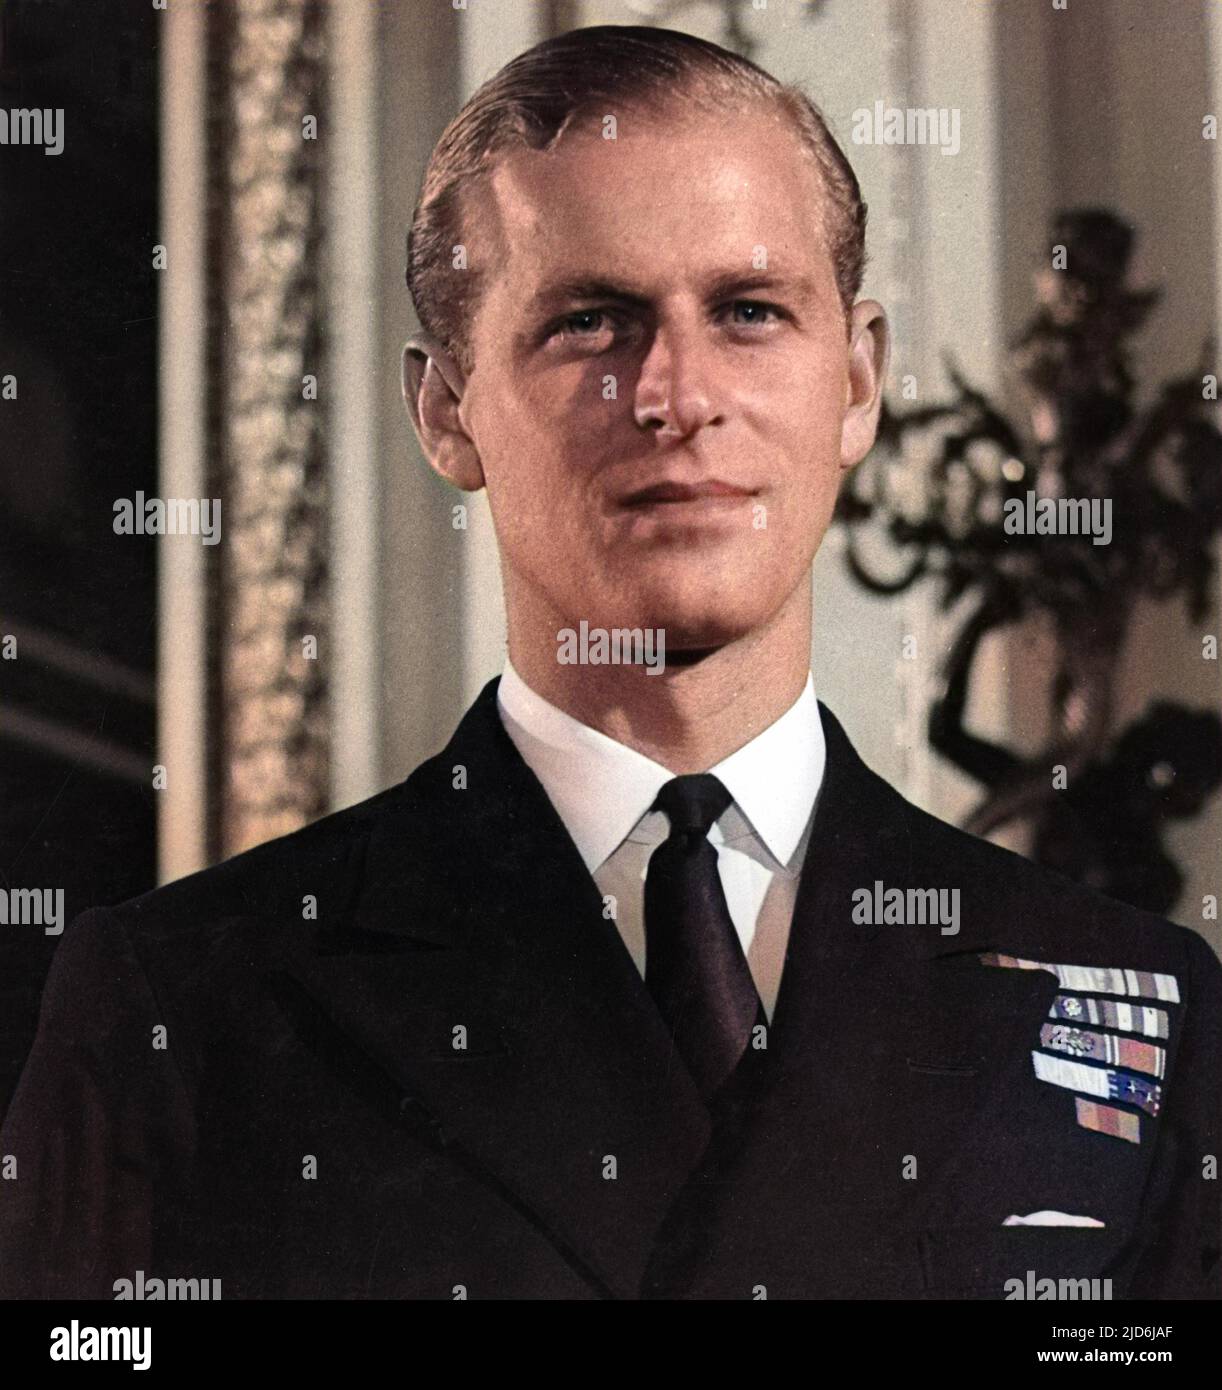 El Teniente Philip Mountbatten, más tarde el Príncipe Felipe, Duque de Edimburgo (nacido en 1921), fotografiado en el momento de su compromiso con la Princesa Elizabeth. Versión coloreada de: 10507986 Fecha: 1947 Foto de stock